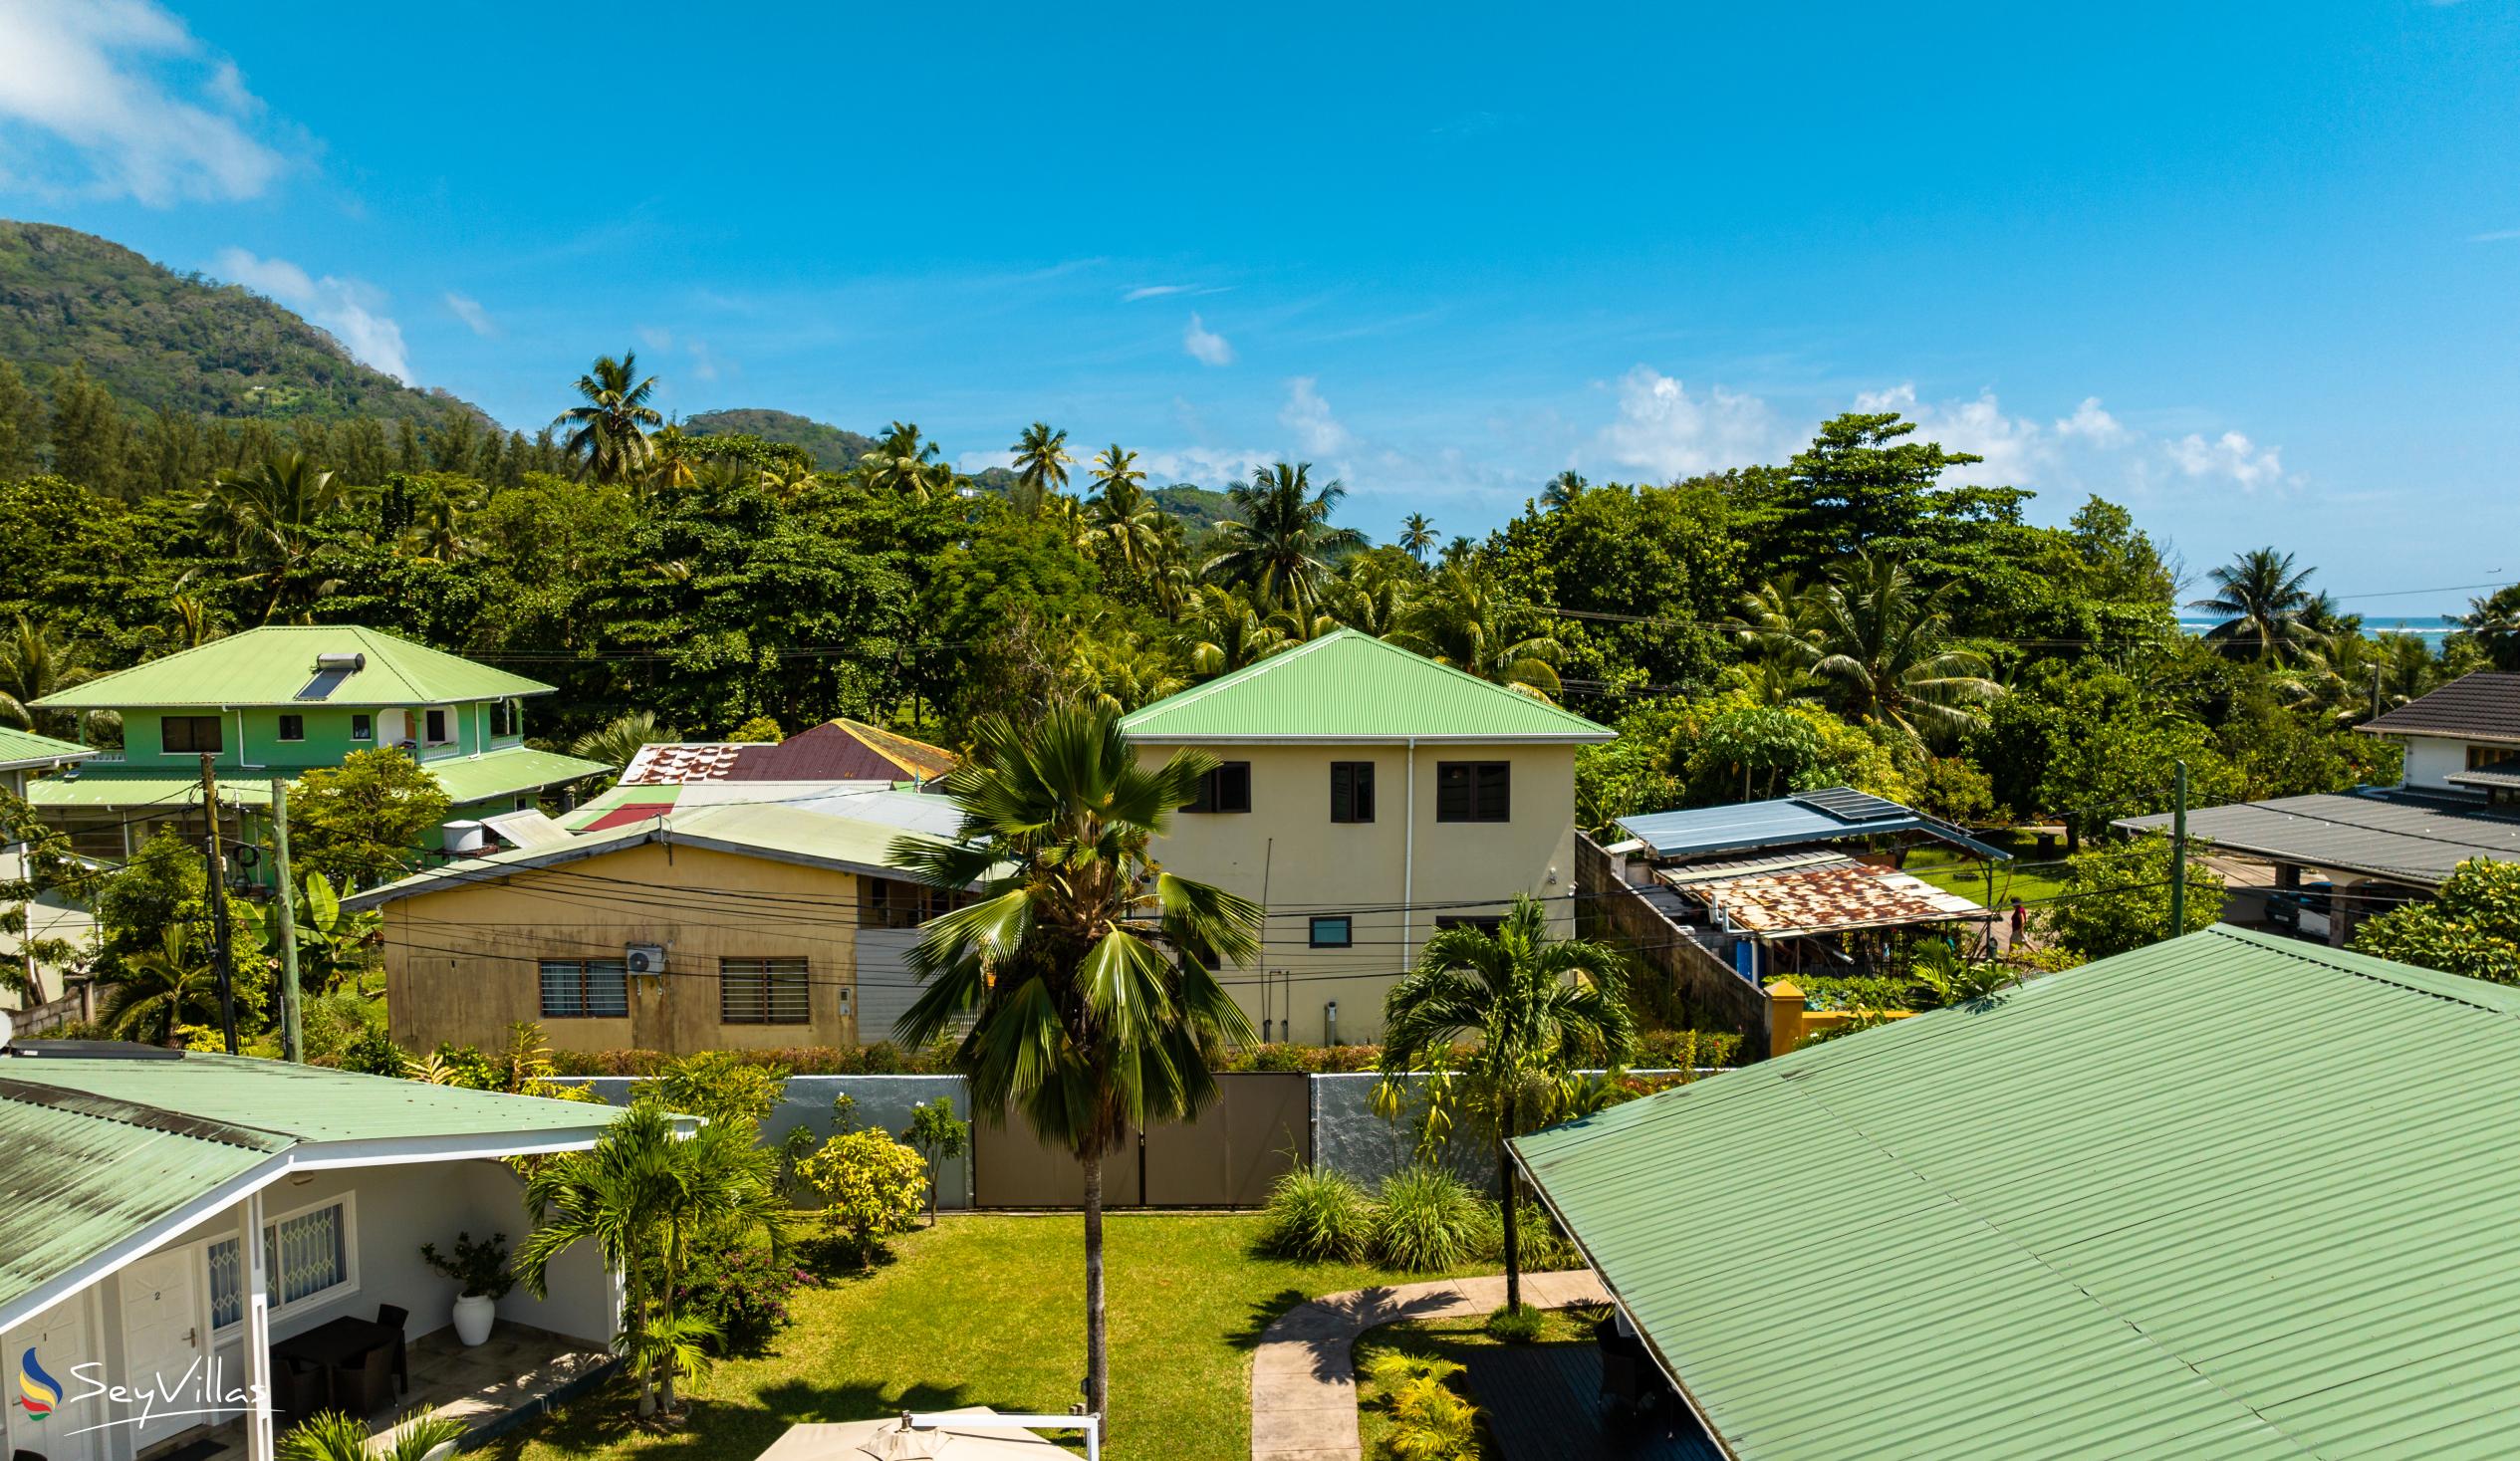 Foto 91: Hotel La Roussette - Location - Mahé (Seychelles)